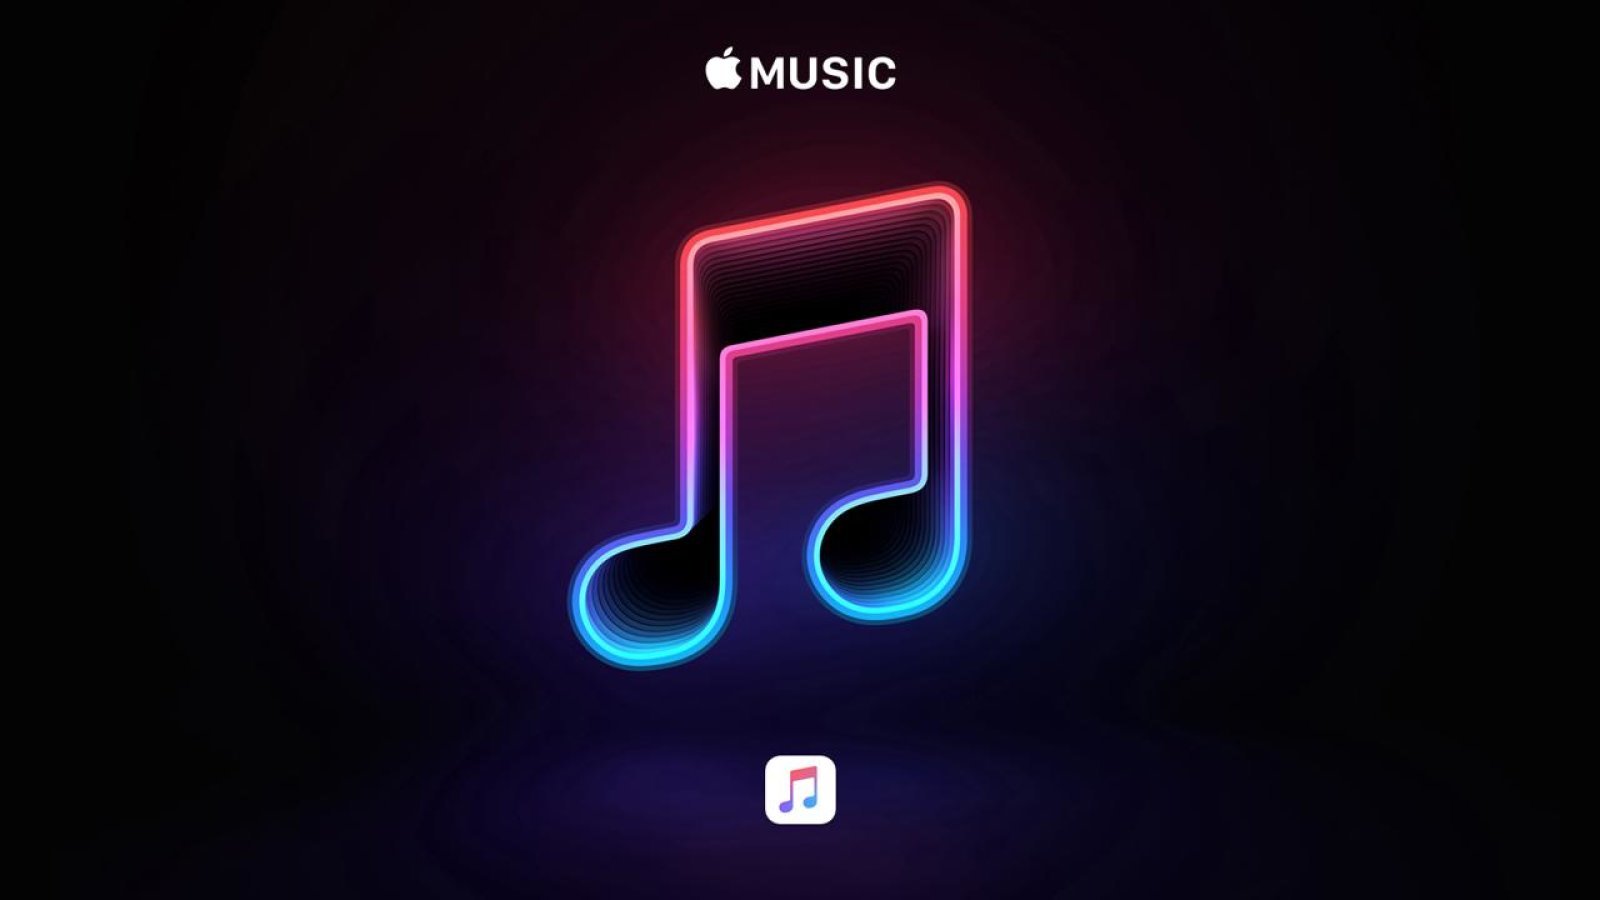 Apple Musicでアルバムが2つに分かれてしまった。1つに戻す方法。 | loveMac.jp